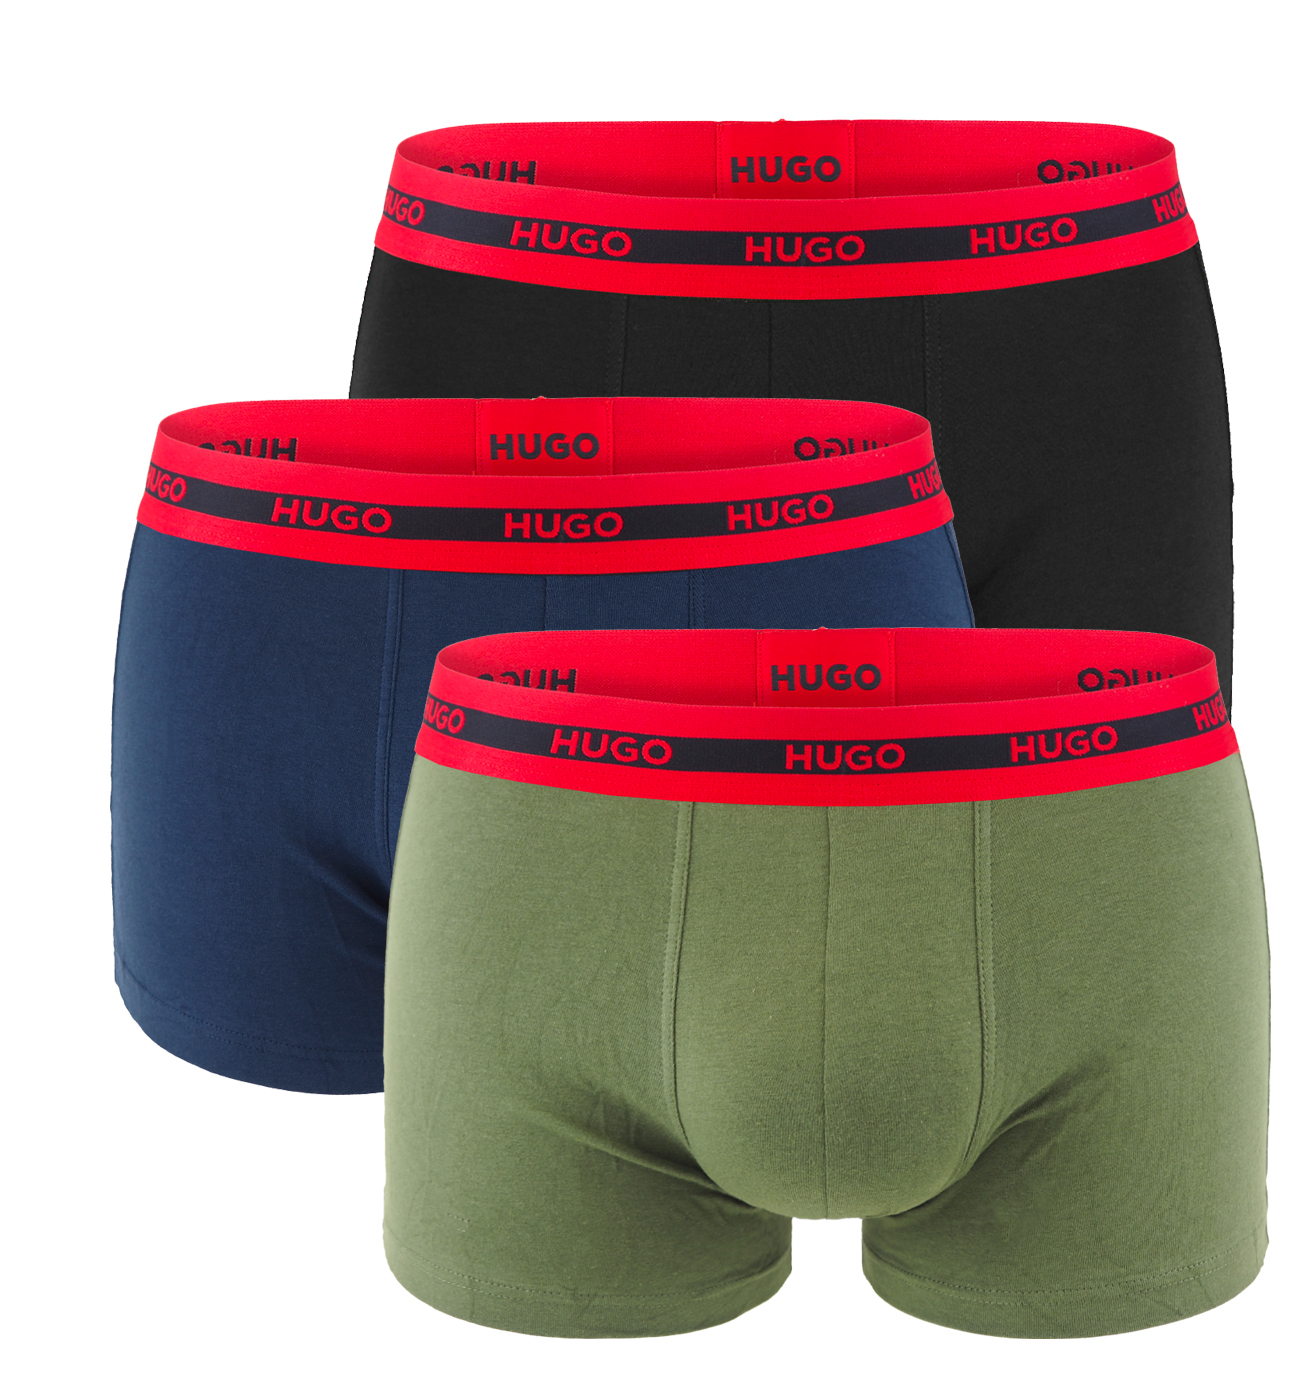 HUGO - boxerky 3PACK cotton stretch black & army green color combo z organickej bavlny - limitovaná fashion edícia (HUGO BOSS)